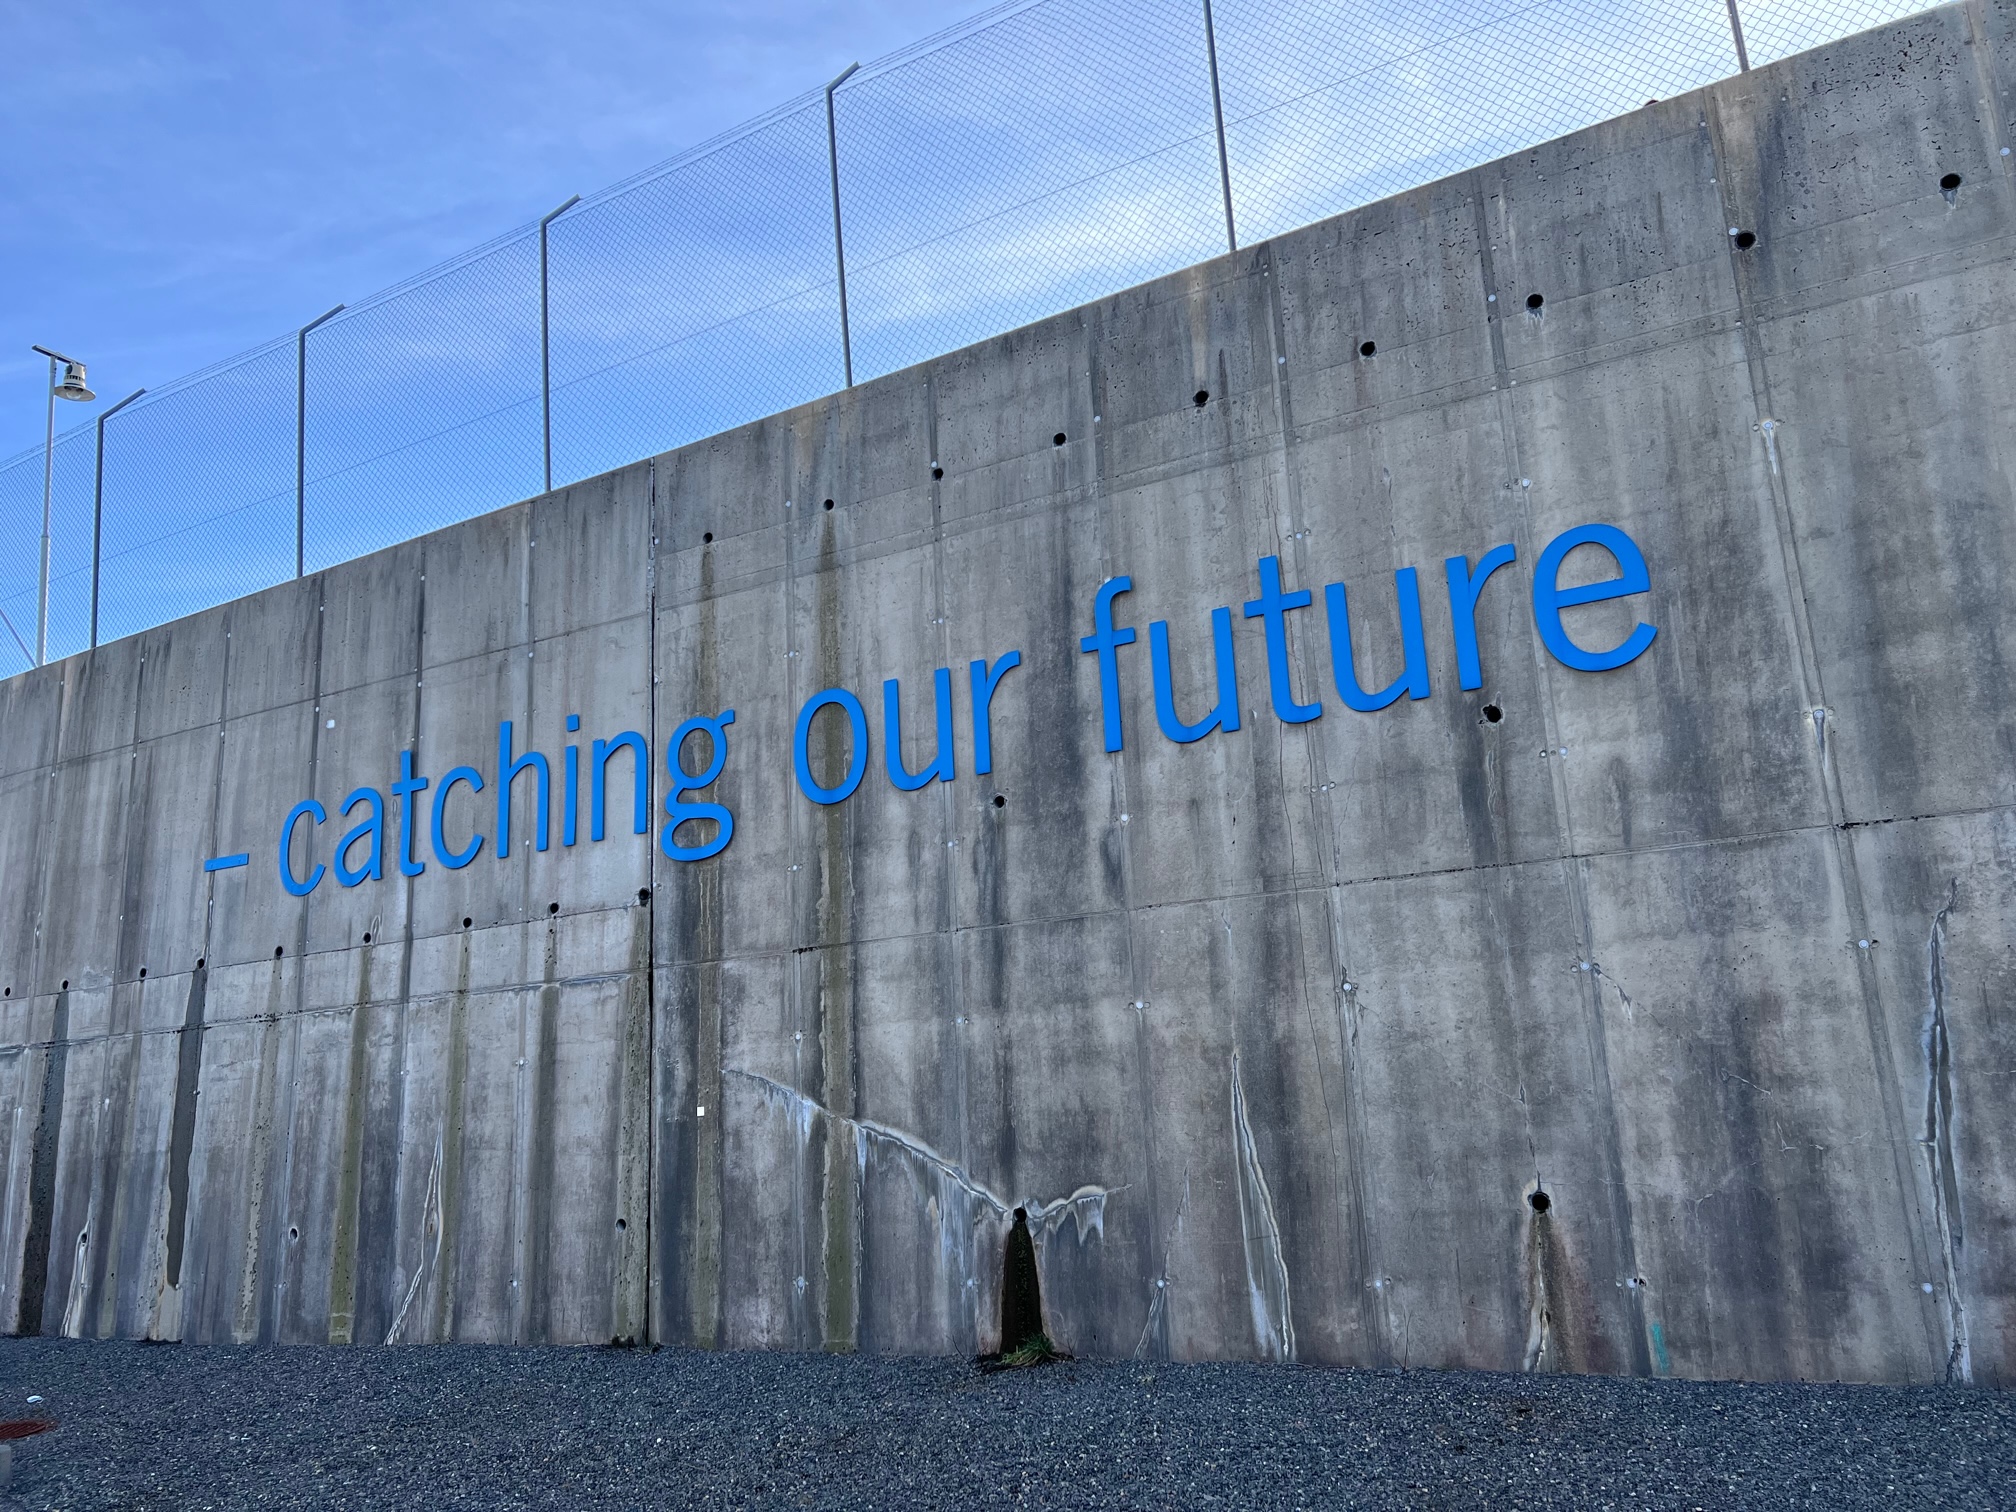 Et bilde av en vegg hvor det står "Catching our future". Foto.